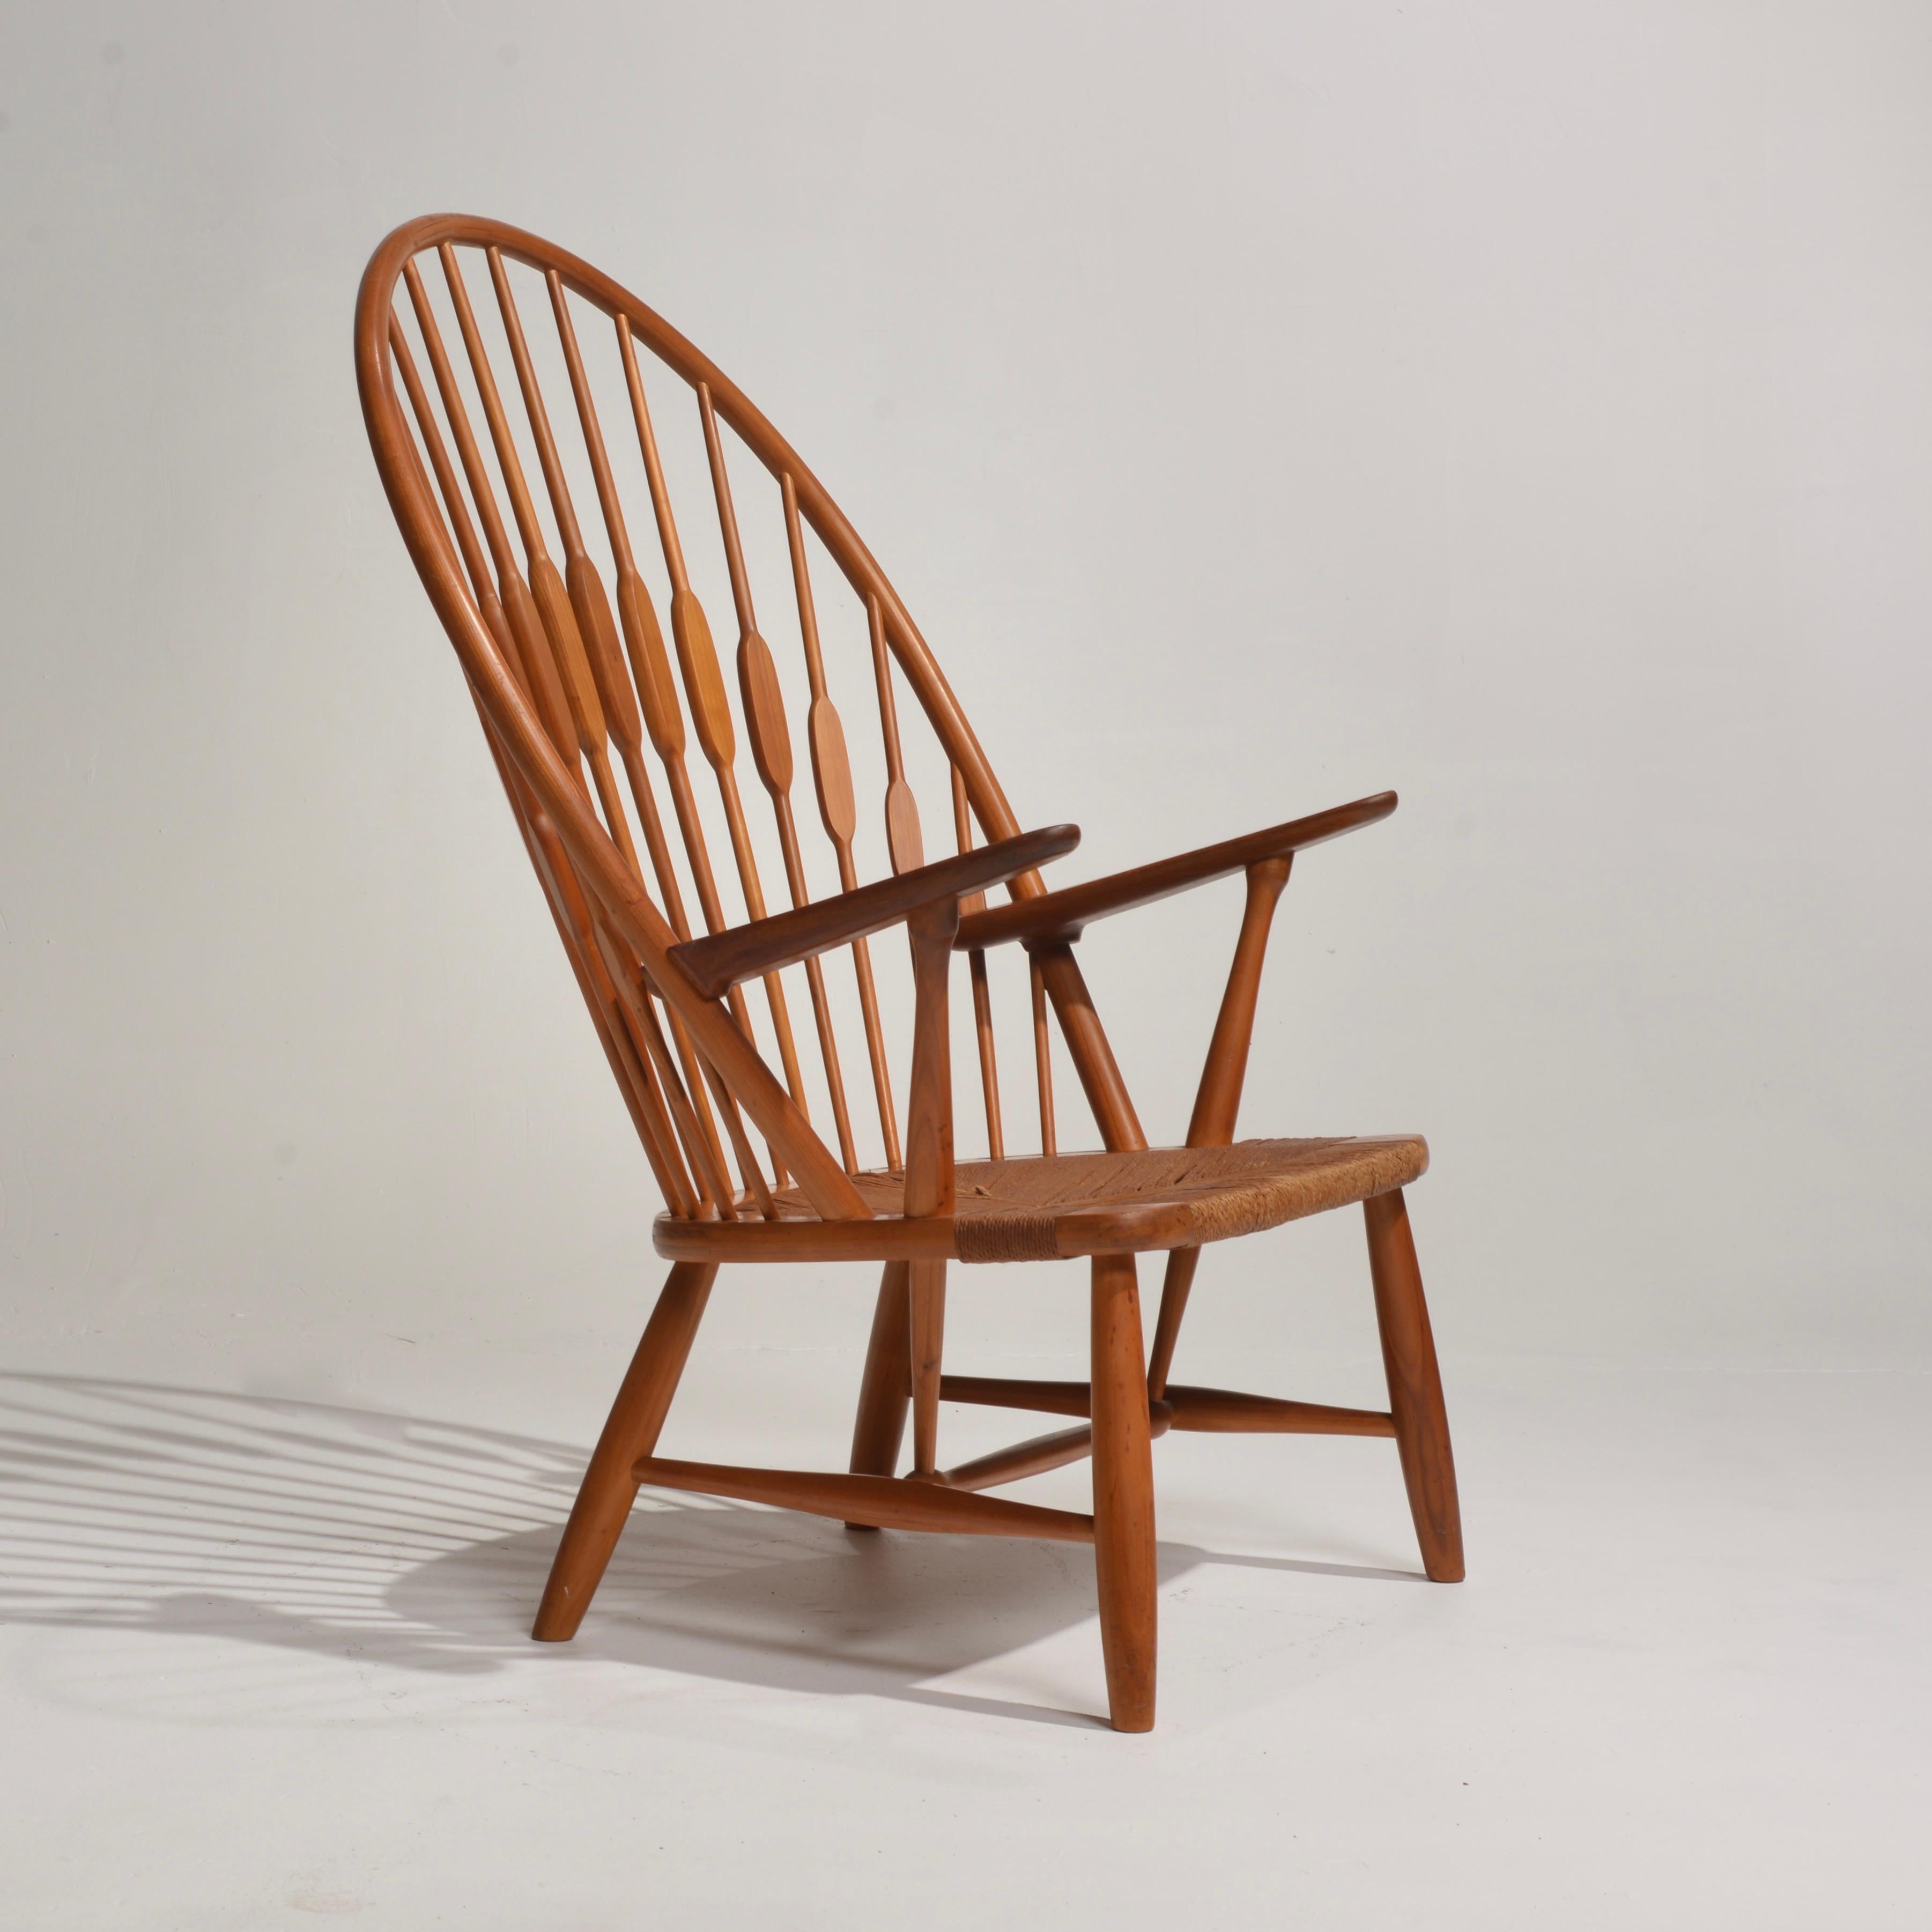 Mid-Century Modern Early Hans J. Wegner JH-550 Peacock Chair for Johannes Hansen, 1950's Denmark For Sale